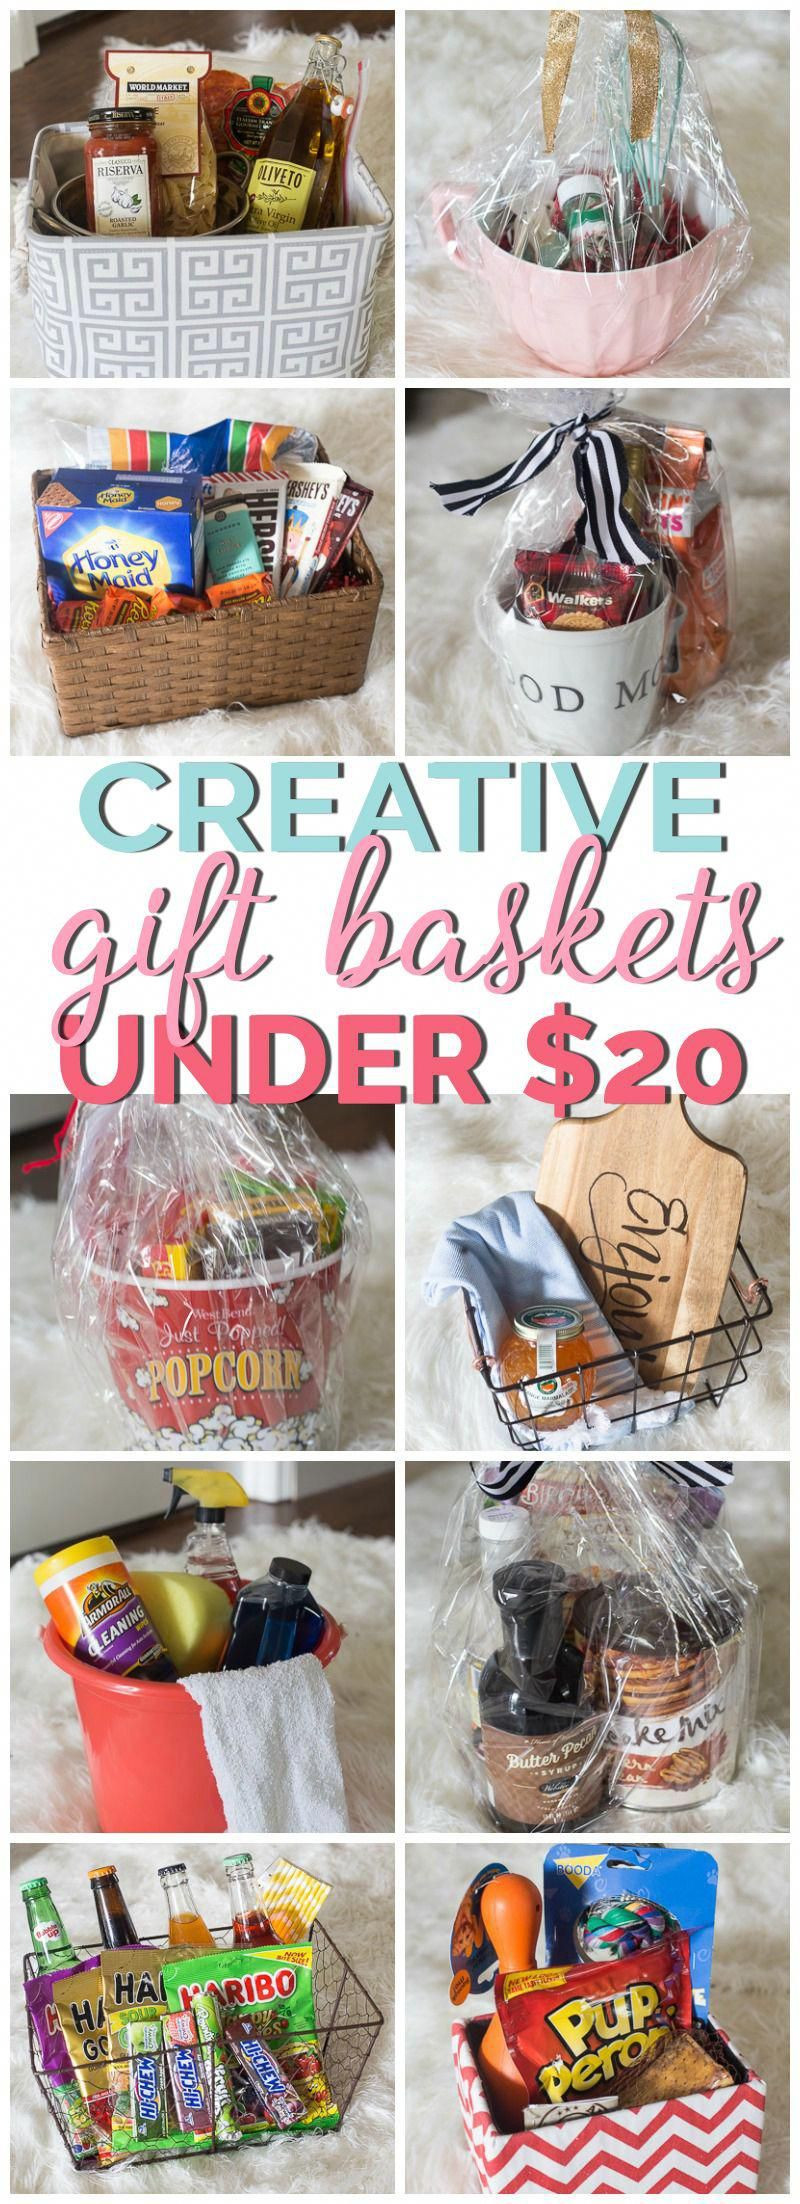 Gift Basket Ideas Under $20
 Creative Gift Basket Ideas all under $20 diy tbaskets